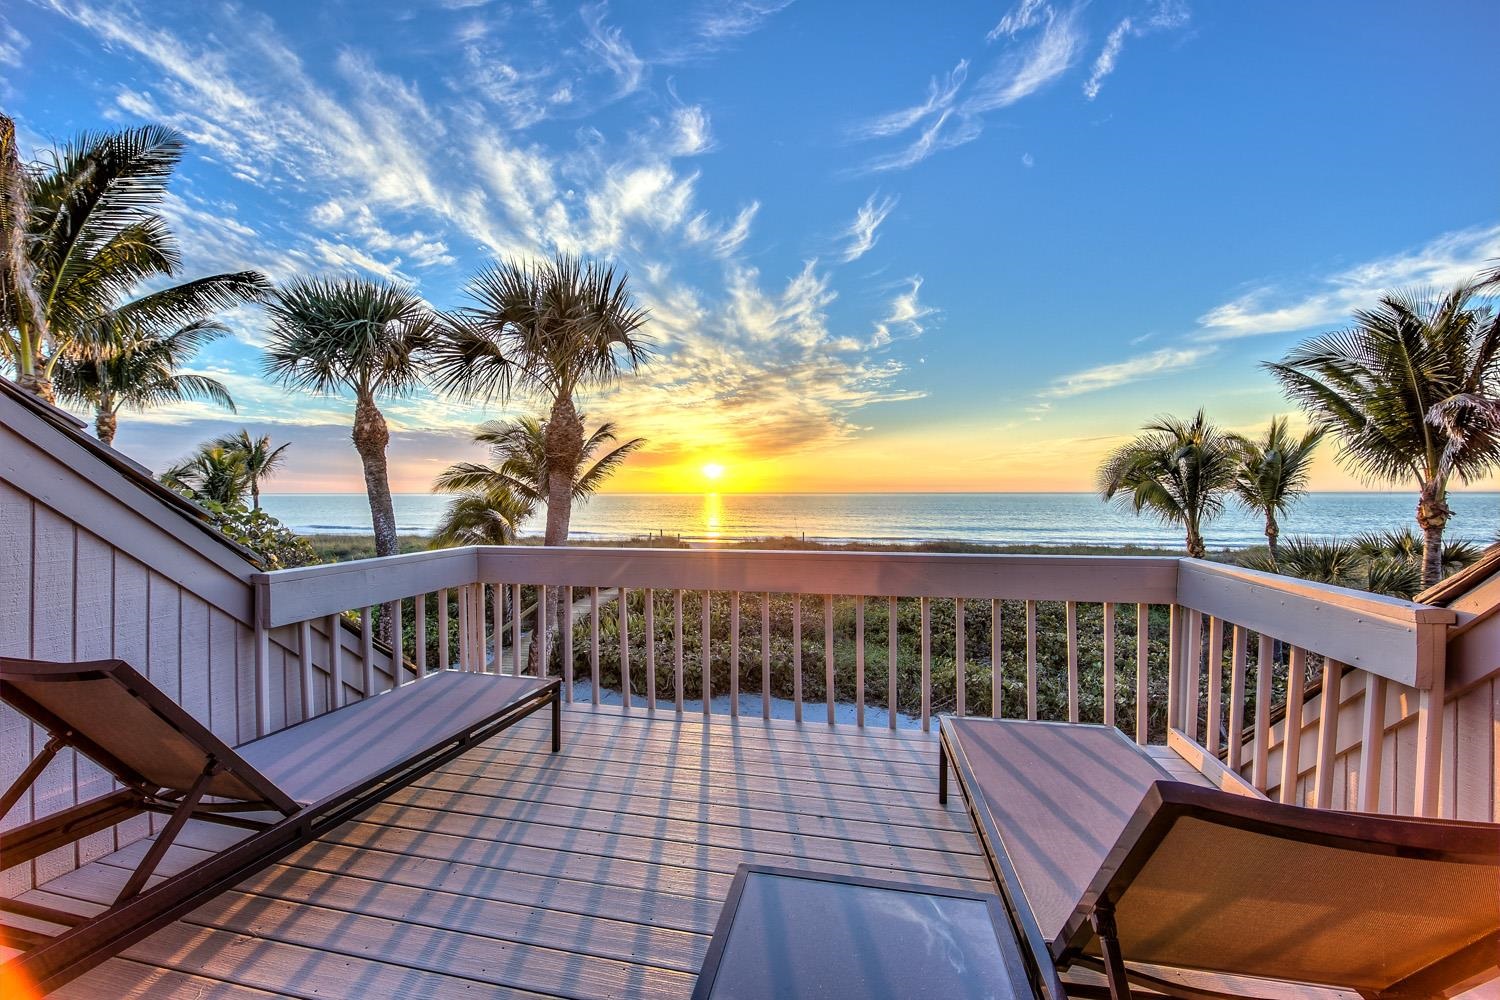 13 Beach Homes, Captiva, Florida 33924, 4 Bedrooms Bedrooms, ,4 BathroomsBathrooms,Condo,For Sale,Beach Homes,2240312